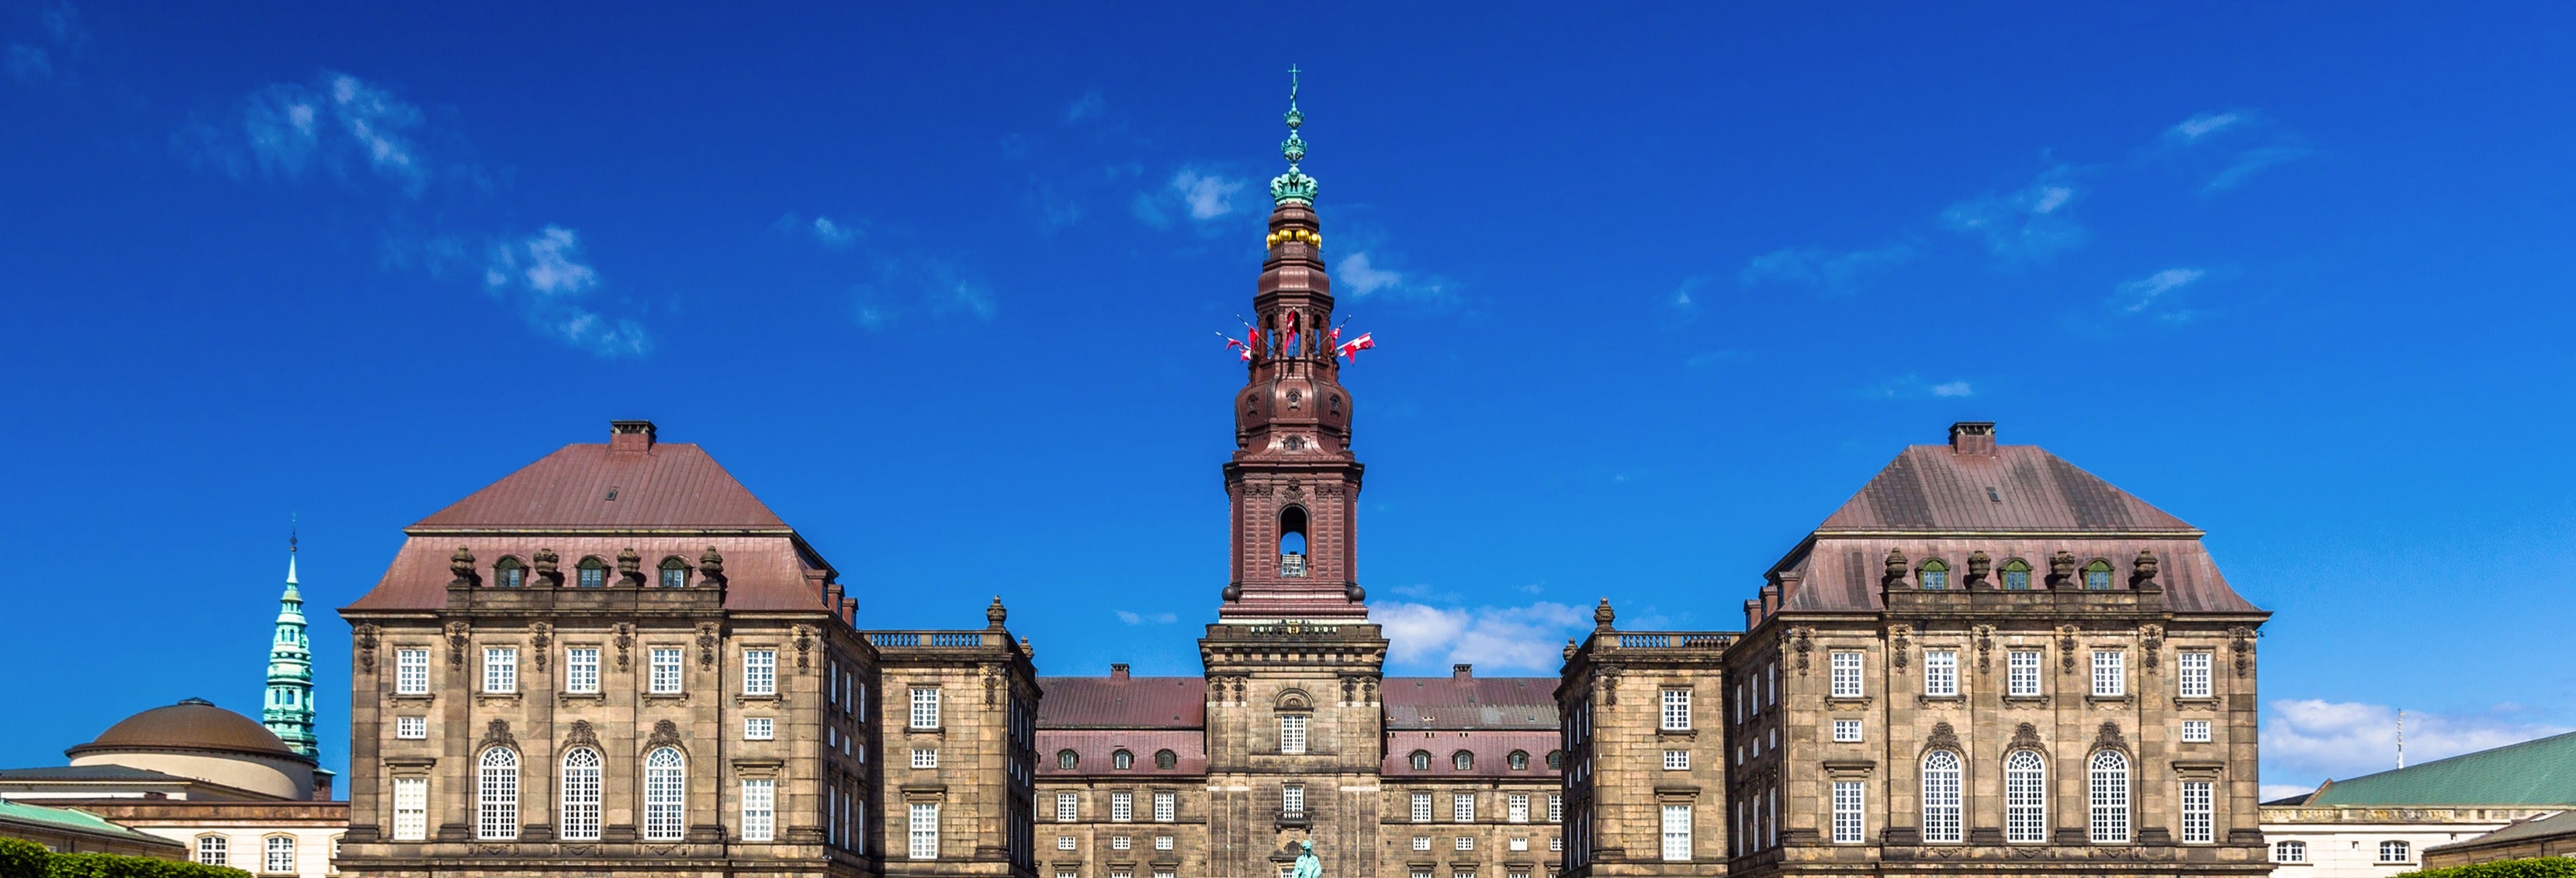 Visita guiada pelo Palácio de Christiansborg